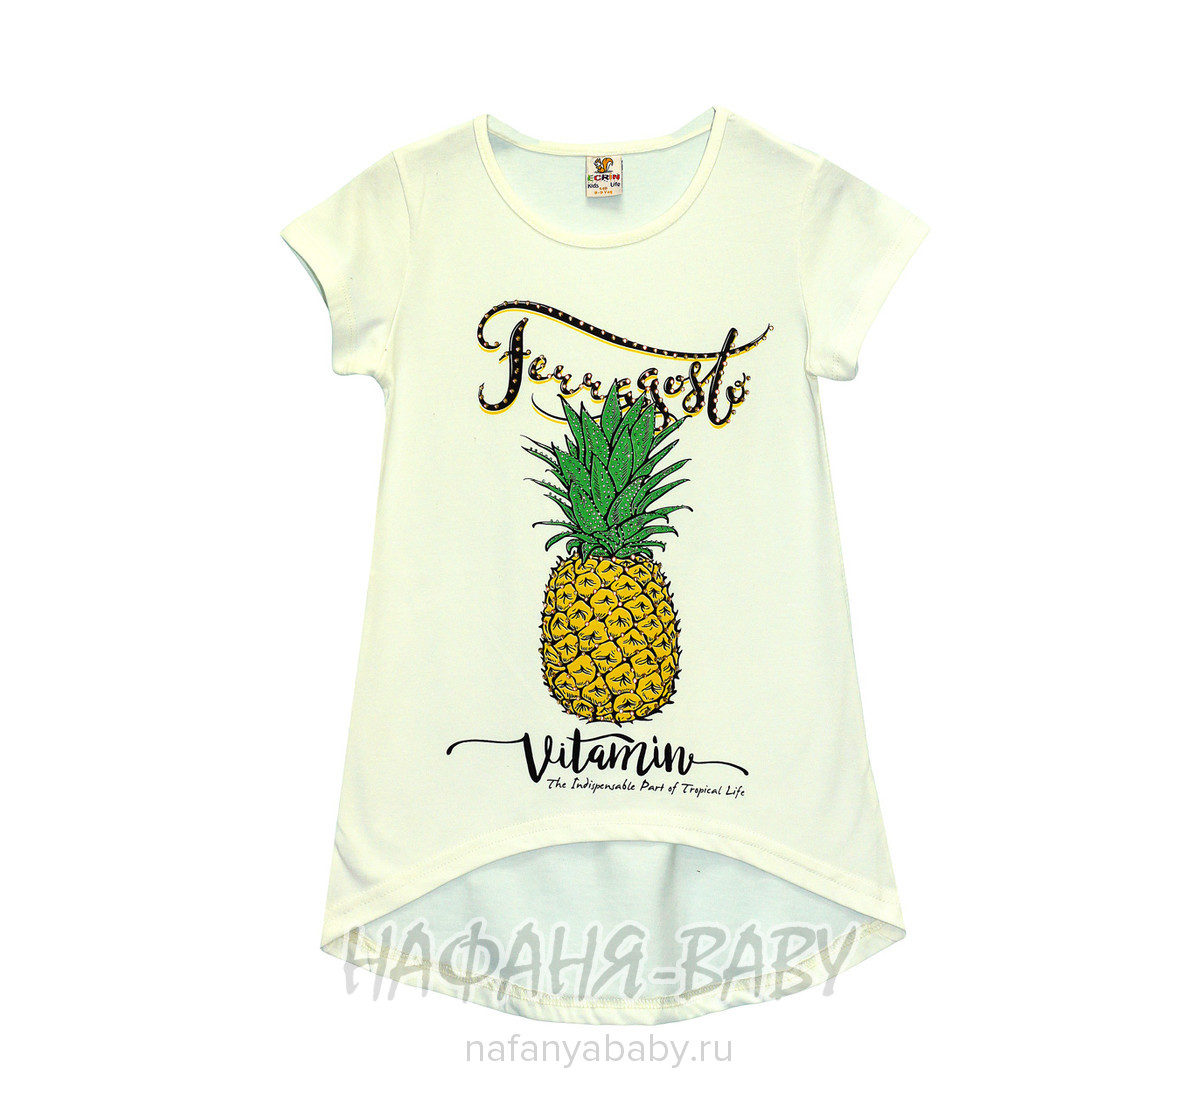 Детская футболка ECRIN, купить в интернет магазине Нафаня. арт: 2509.